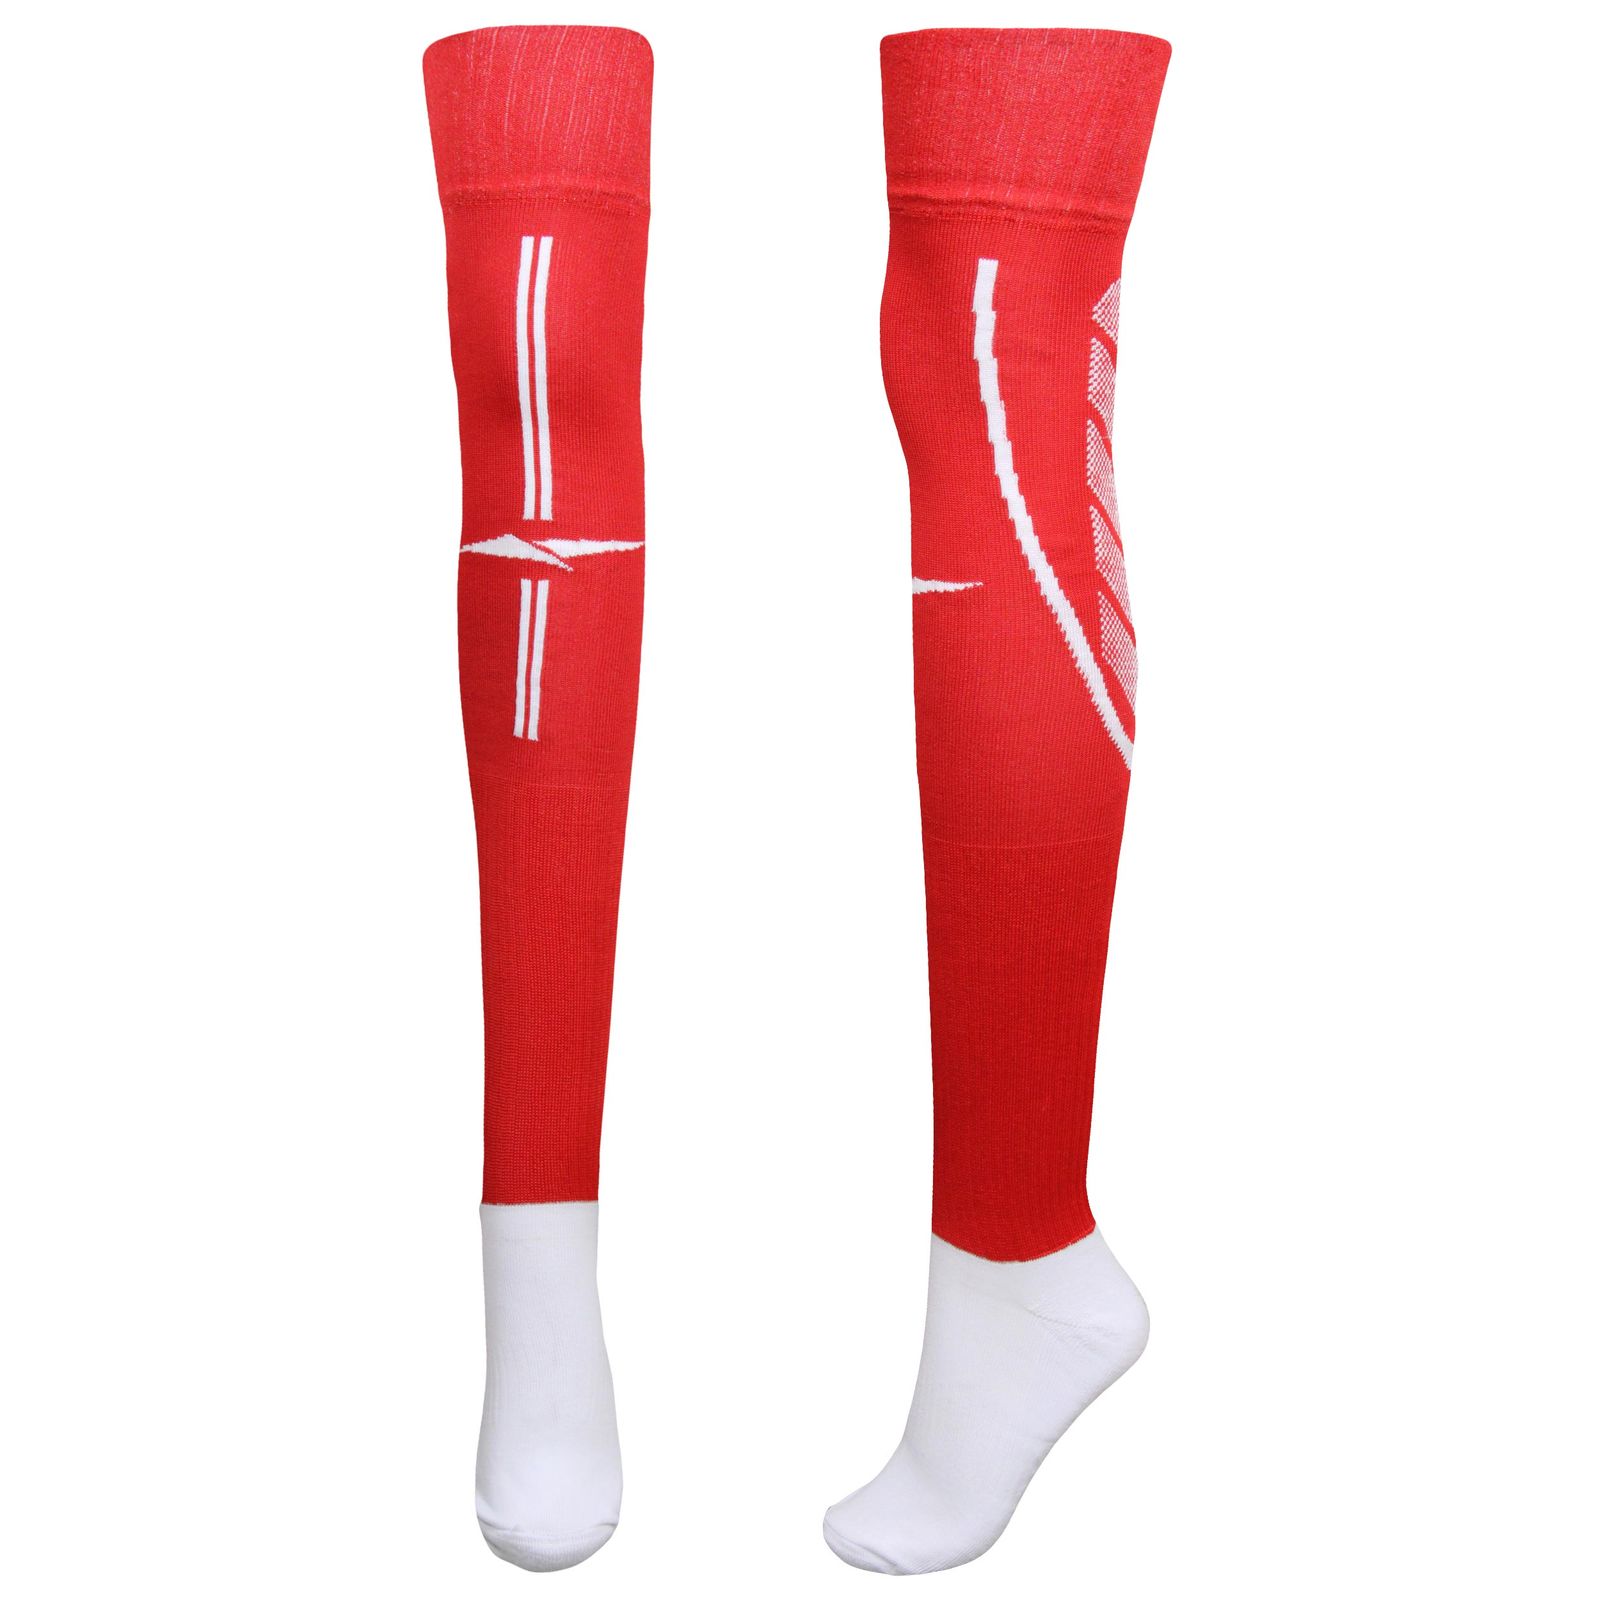 جوراب ورزشی ساق بلند مردانه ماییلدا مدل کف حوله ای کد 4187  رنگ قرمز -  - 2